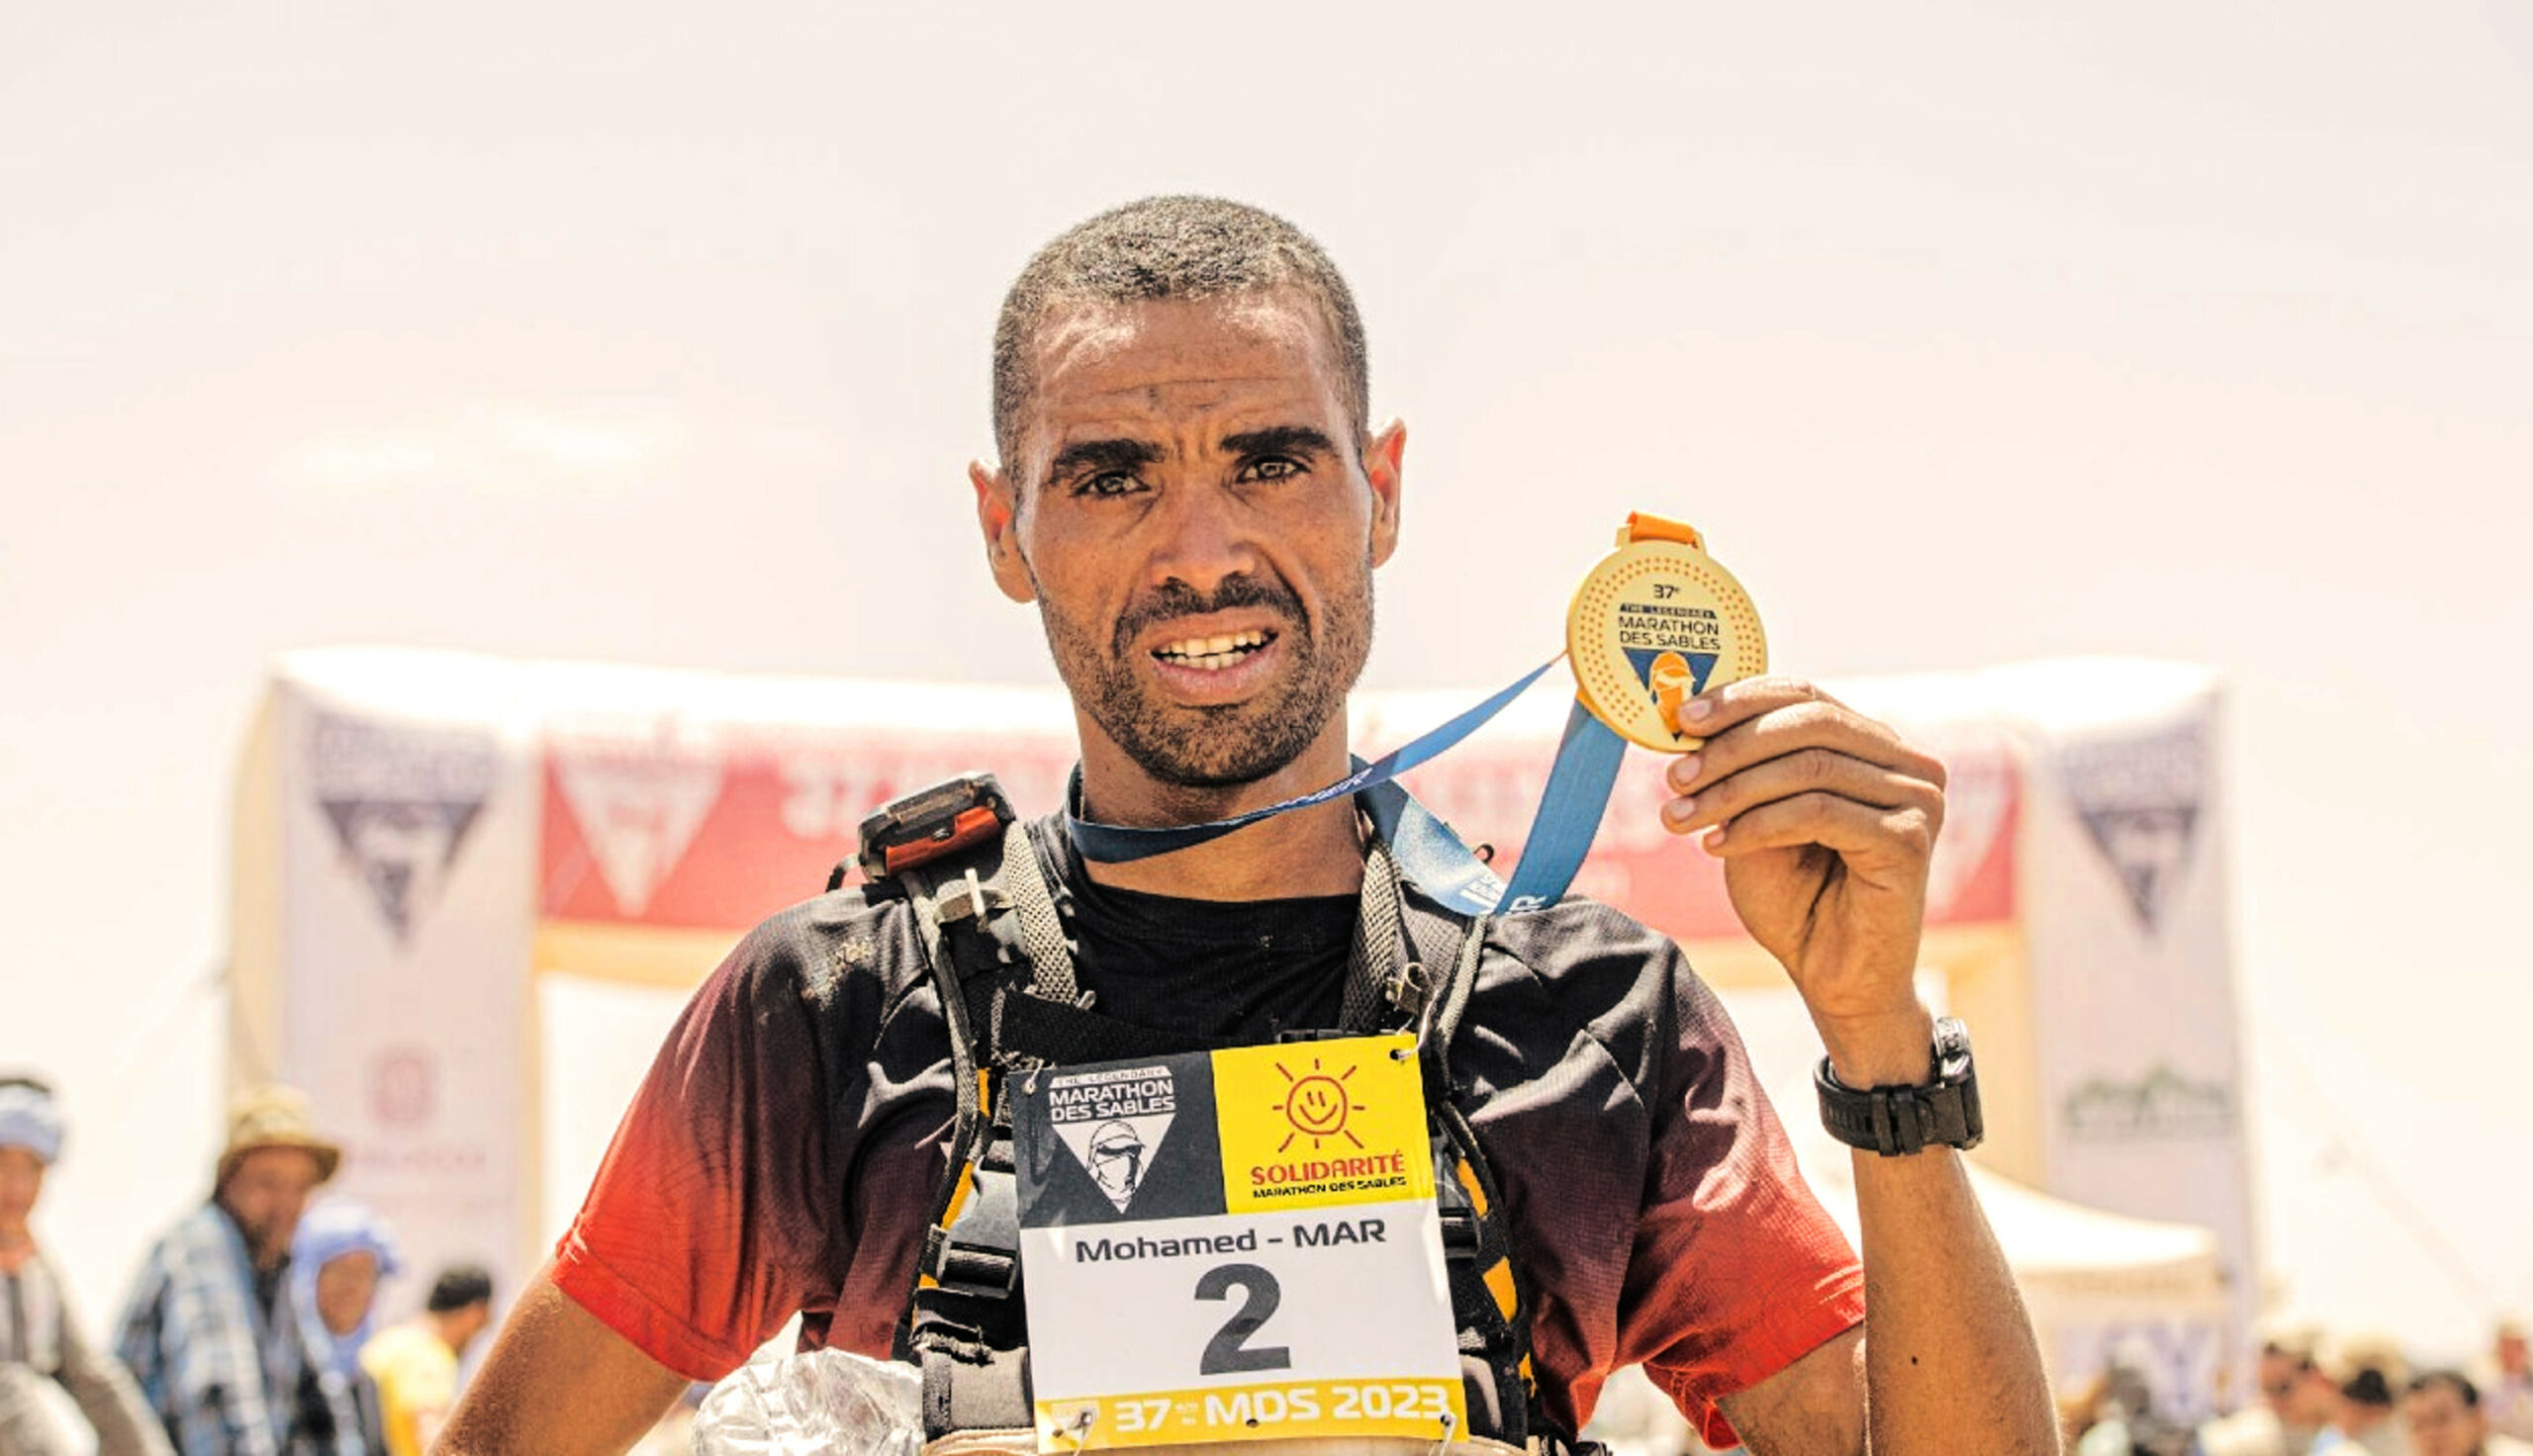 Mohamed El Morabity is the winner of the Marathon des Sables 2023